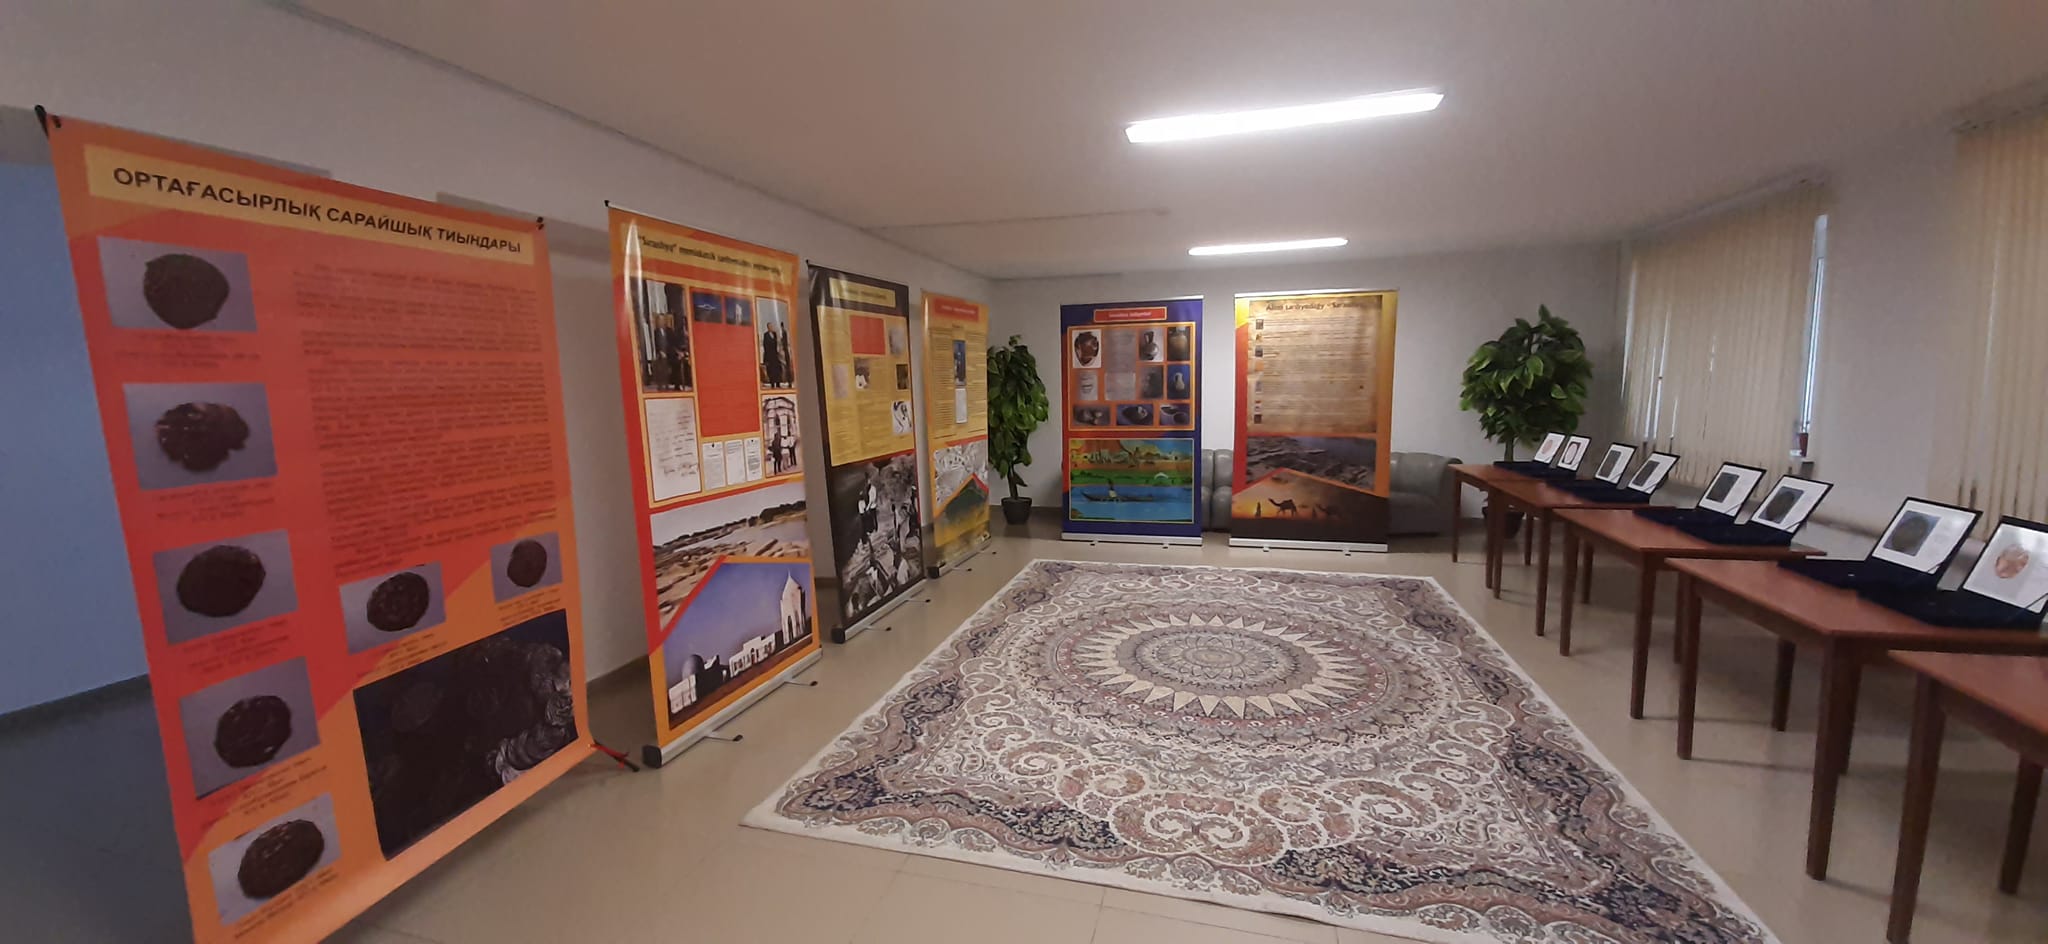 В Доме студентов была организована выставка